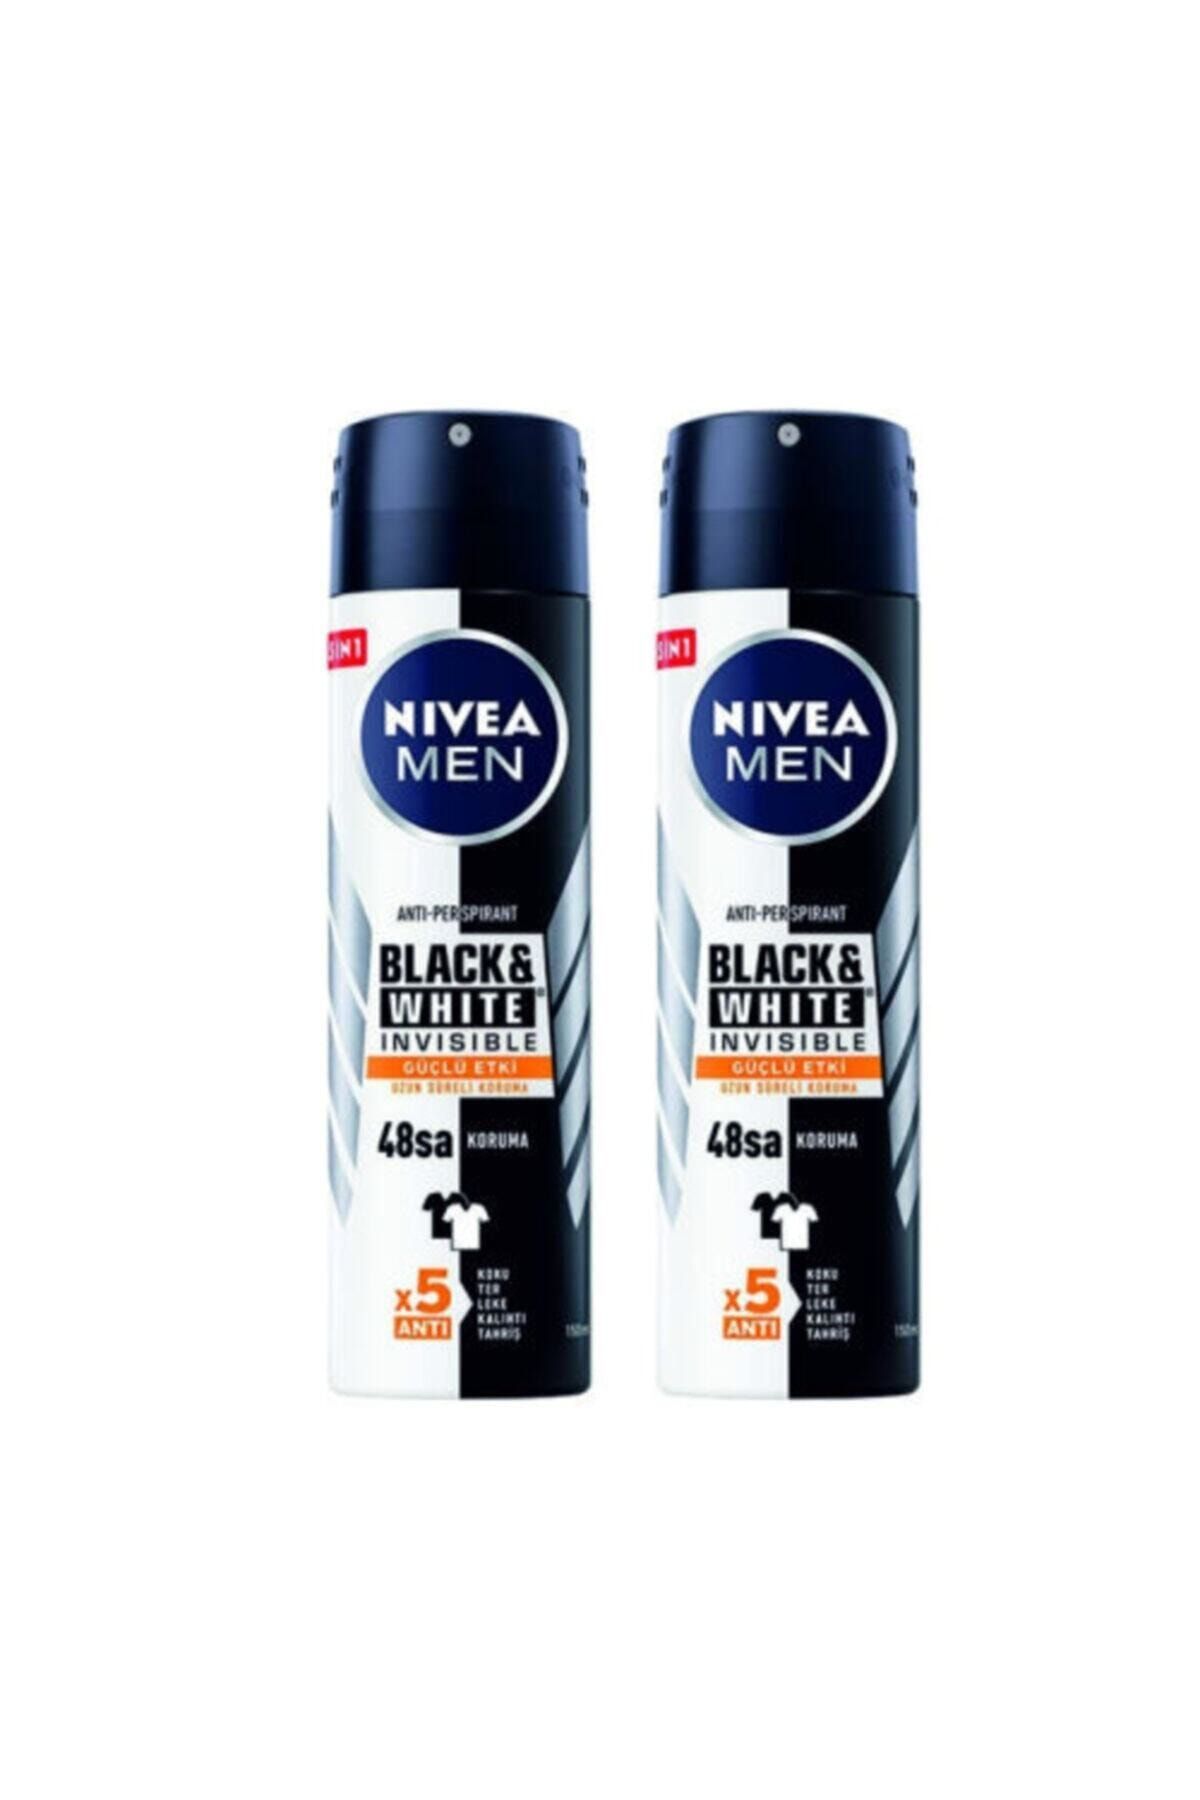 NIVEA Men Black&white Güçlü Etki Deodorant 150 ml. X 2 Ad.